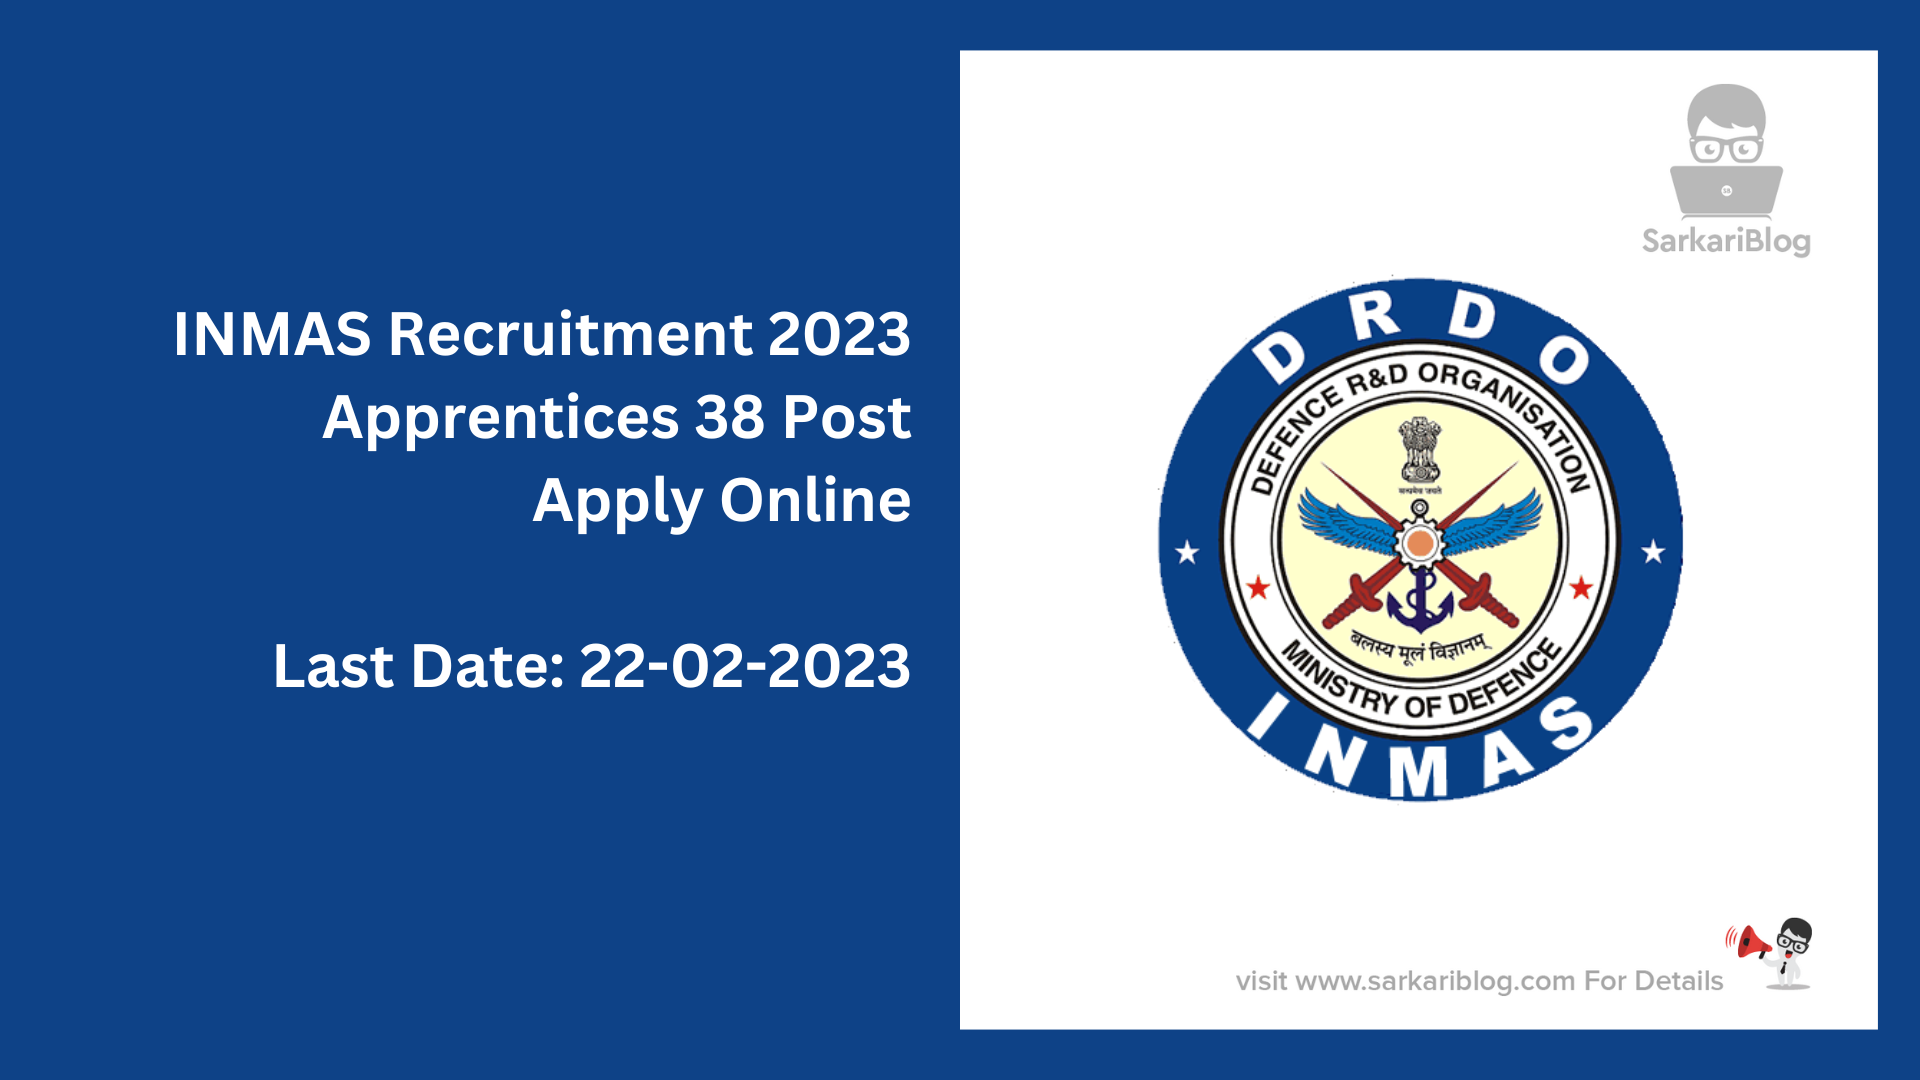 INMAS Apprentices Recruitment 2023